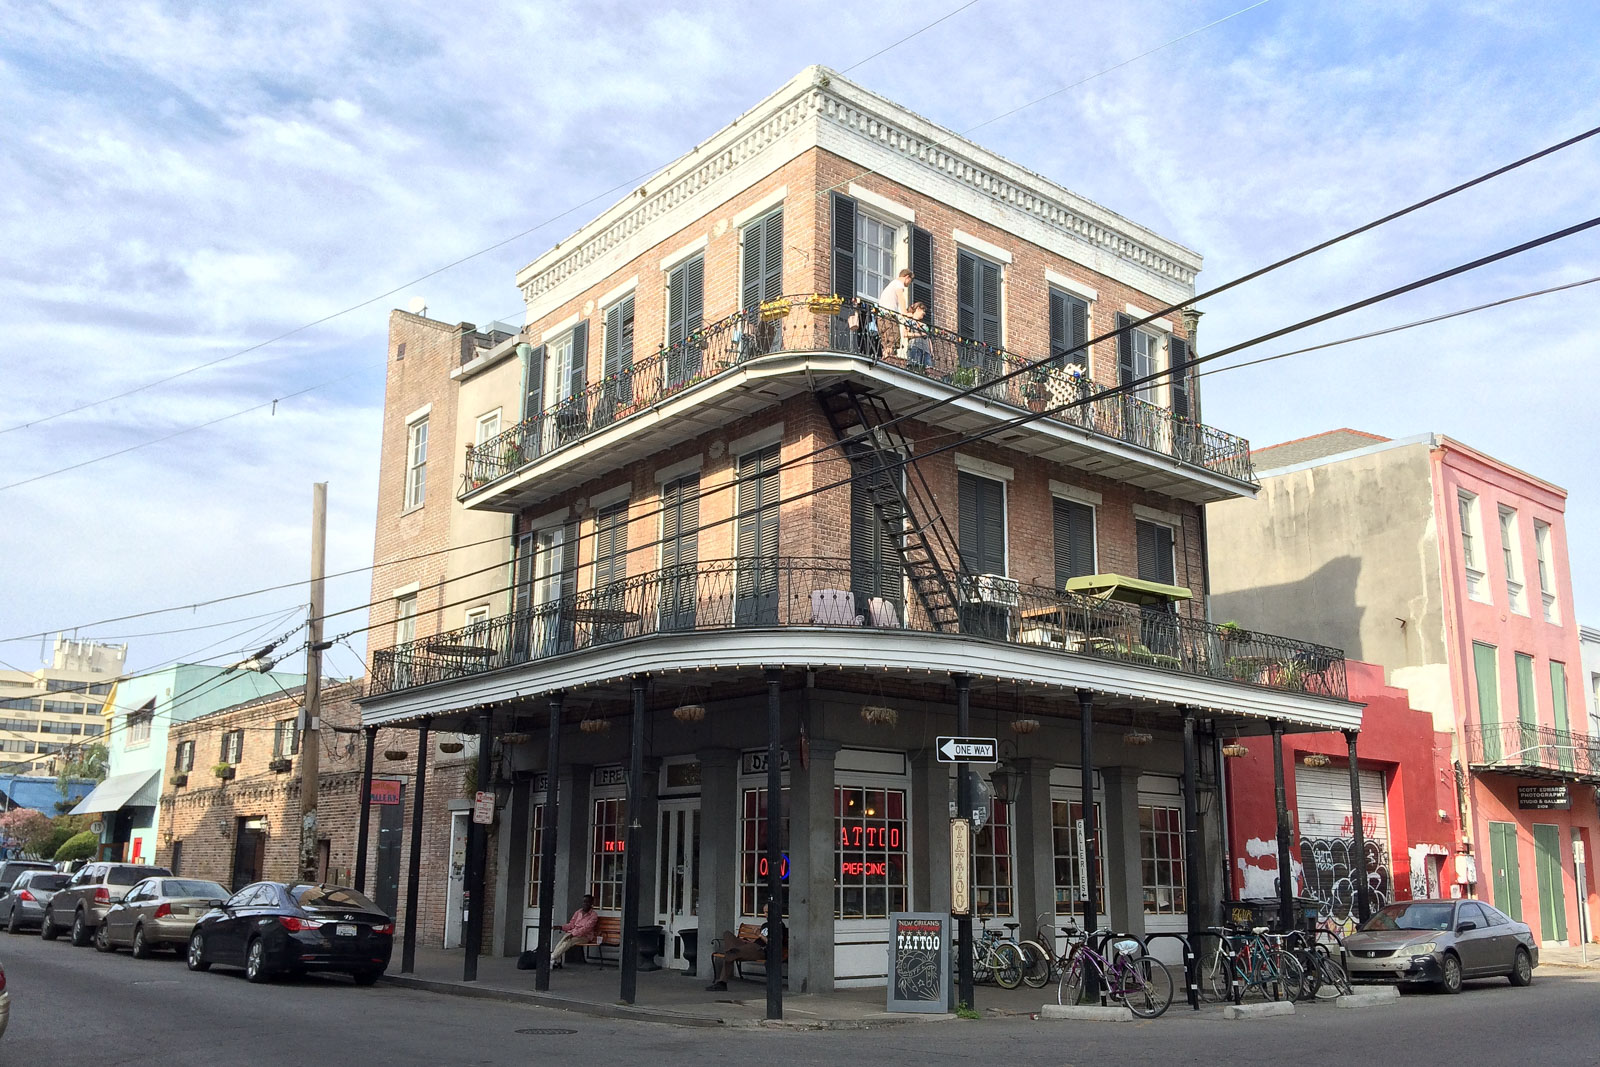 Die Häuser im French Quarter von New Orleans gehören zu den schönsten der USA. Besonders die Balkone sind oft reichhaltig verziert.